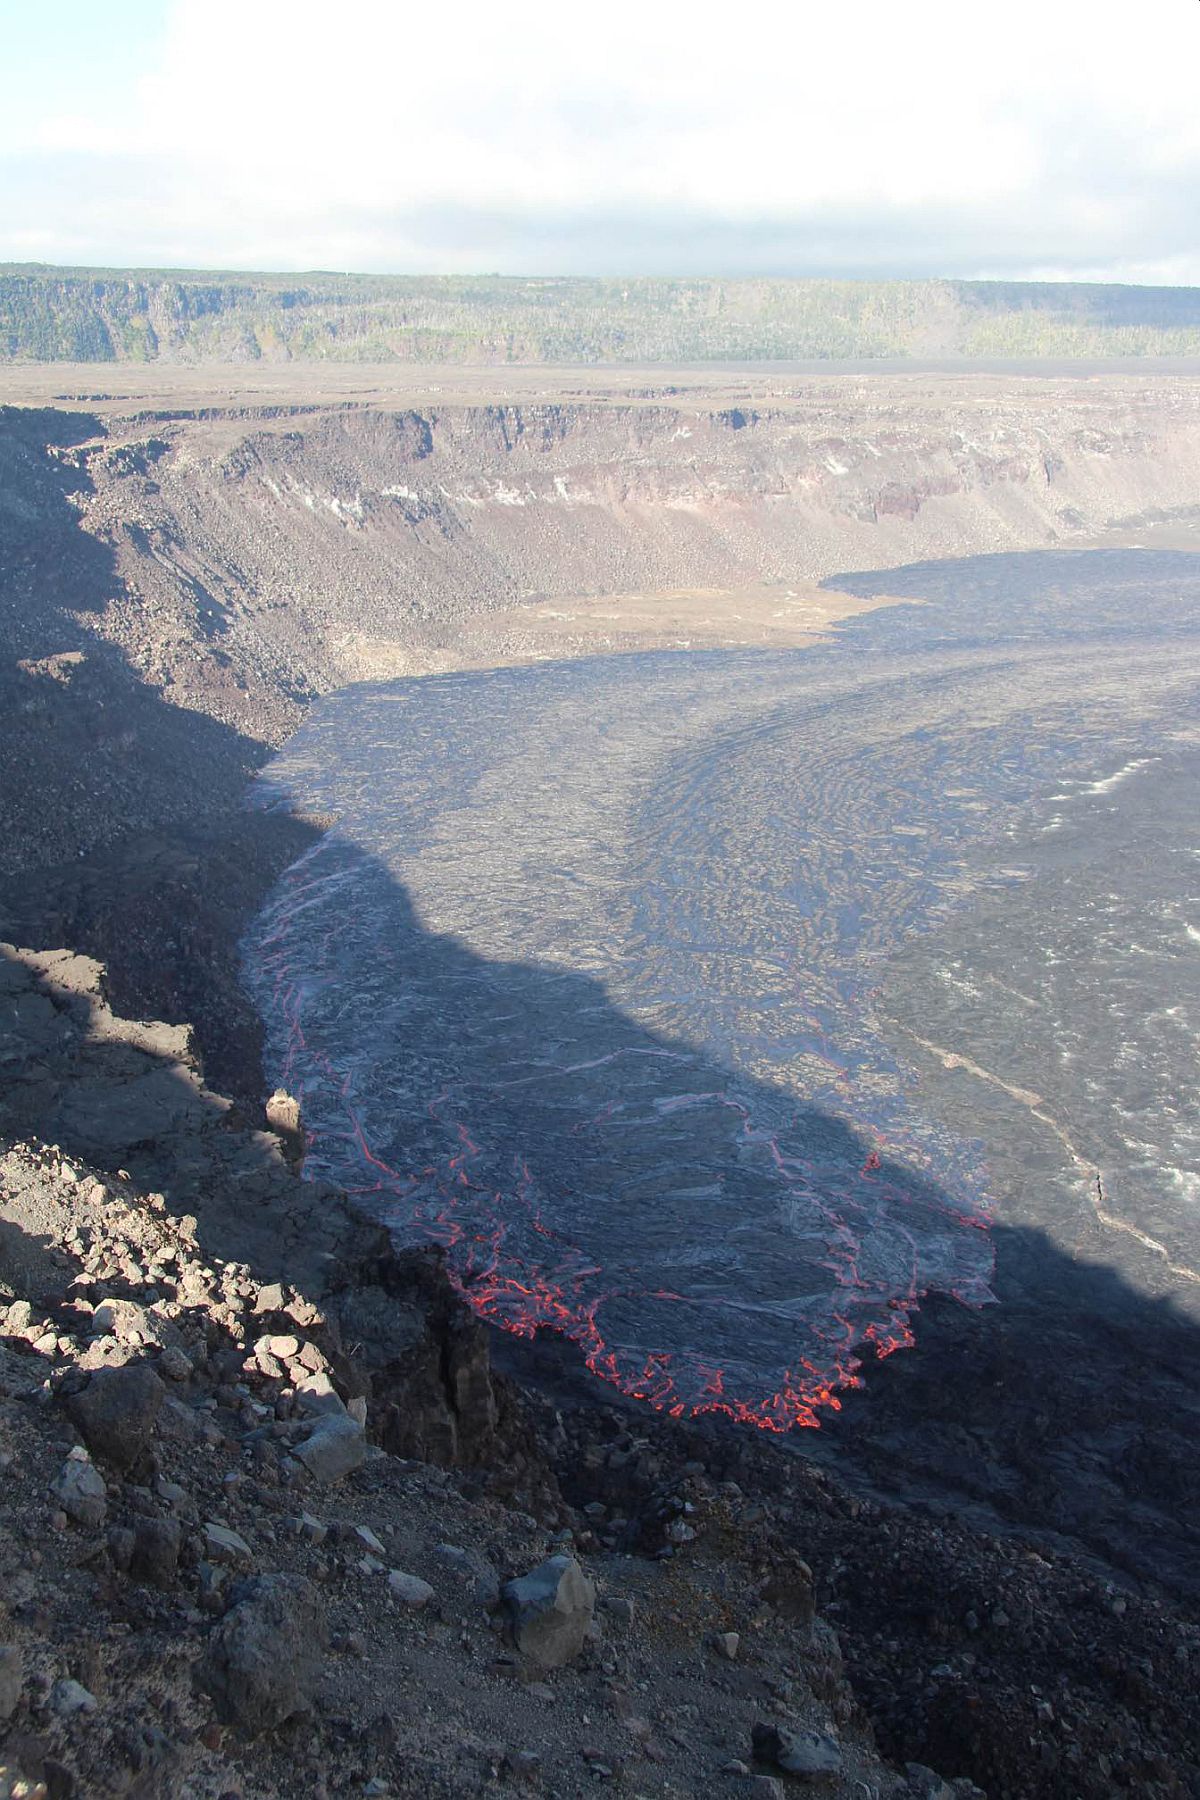 Működésbe lépett a Kilauea vulkán Hawaii legnagyobb szigetén.